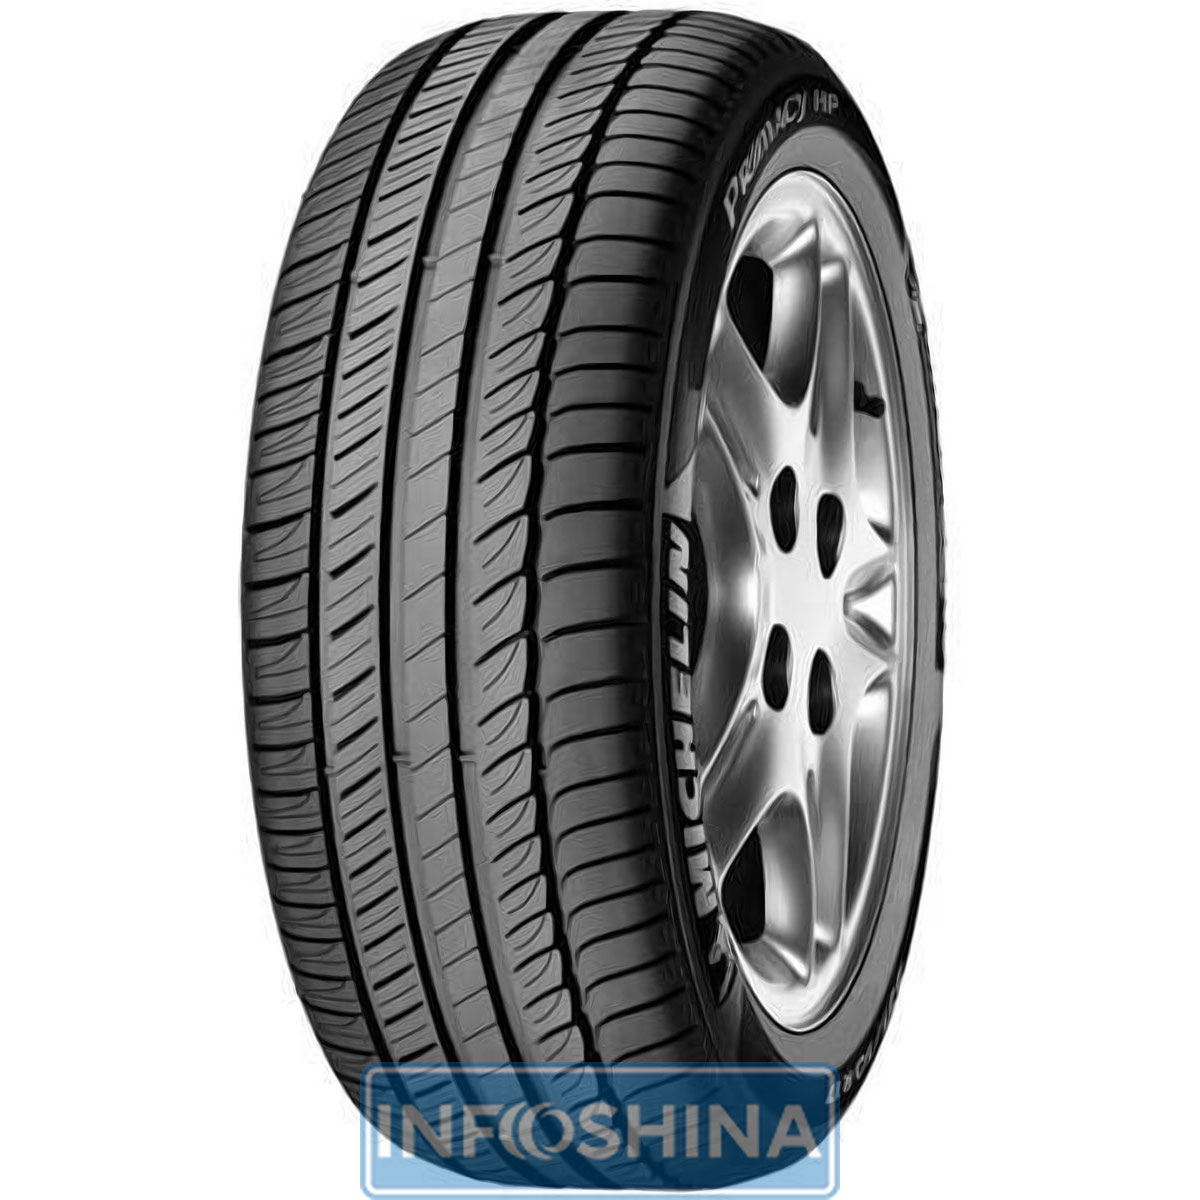 Купить шины Michelin Primacy HP 235/45 R17 94W